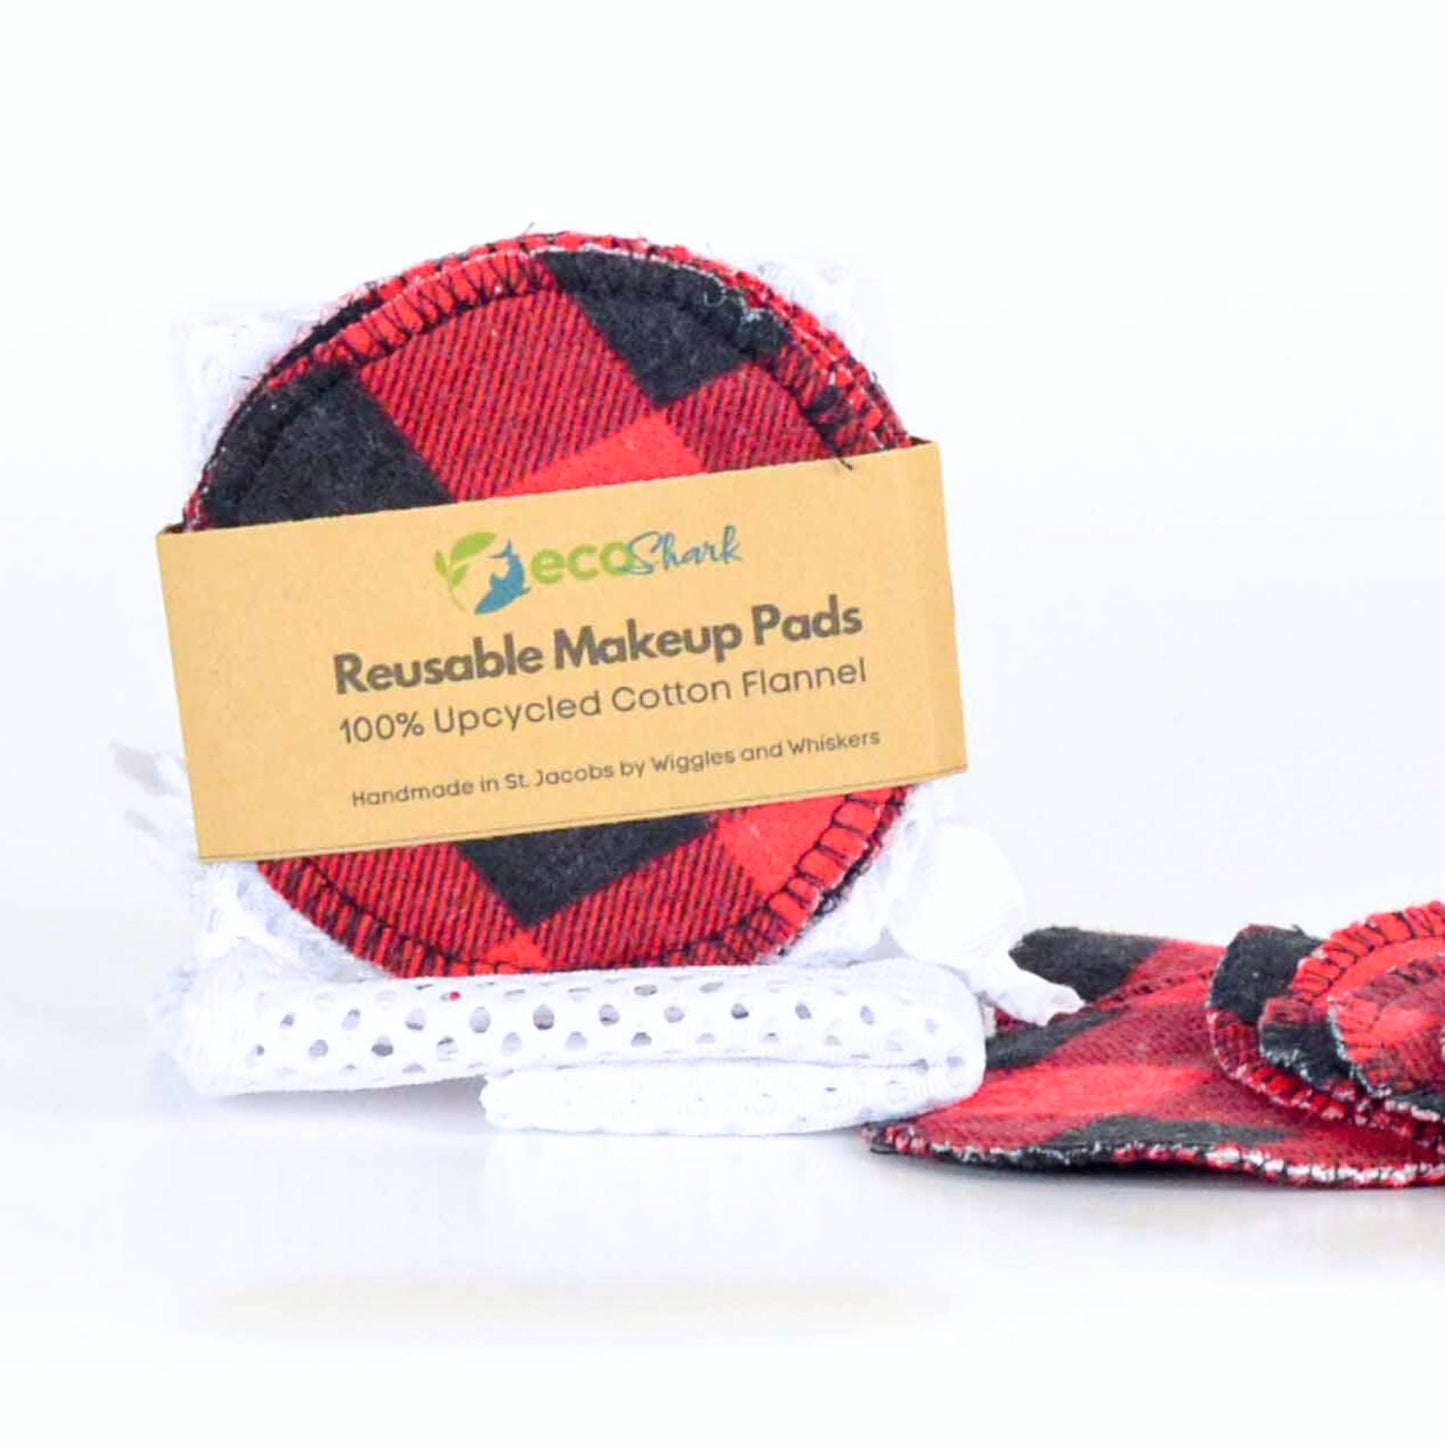 Upcycled reusable cotton facial rounds makeup pads